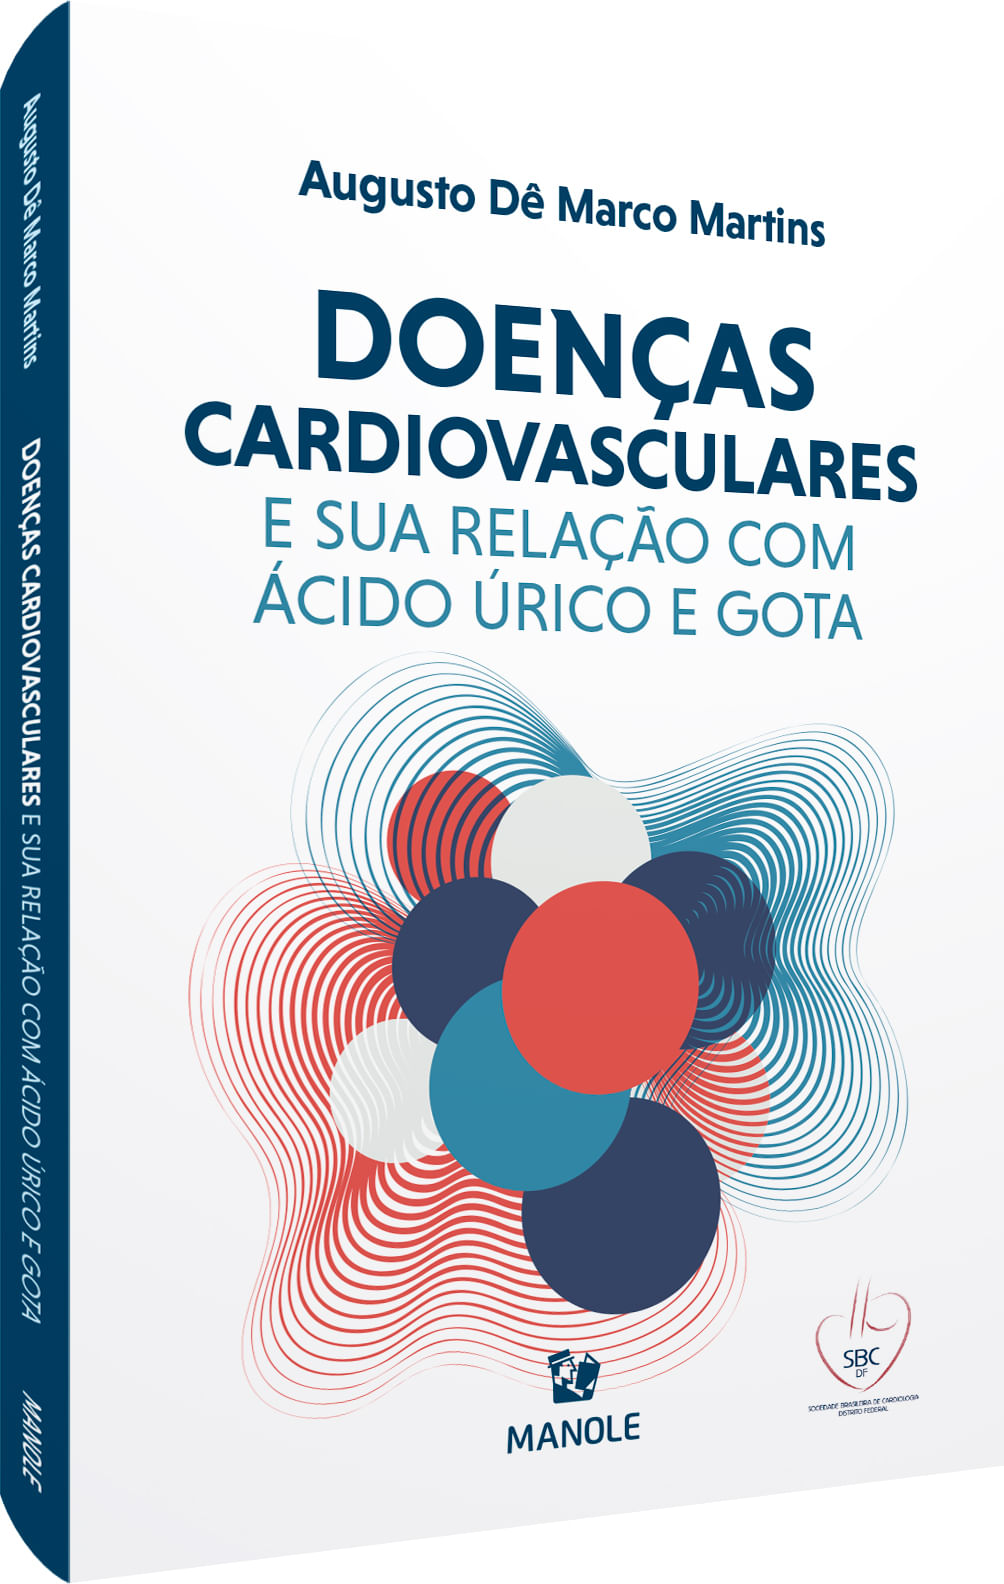 Doencas-Cardiovasculares-e-sua-Relacao-com-Acido-Urico-e-Gota-final